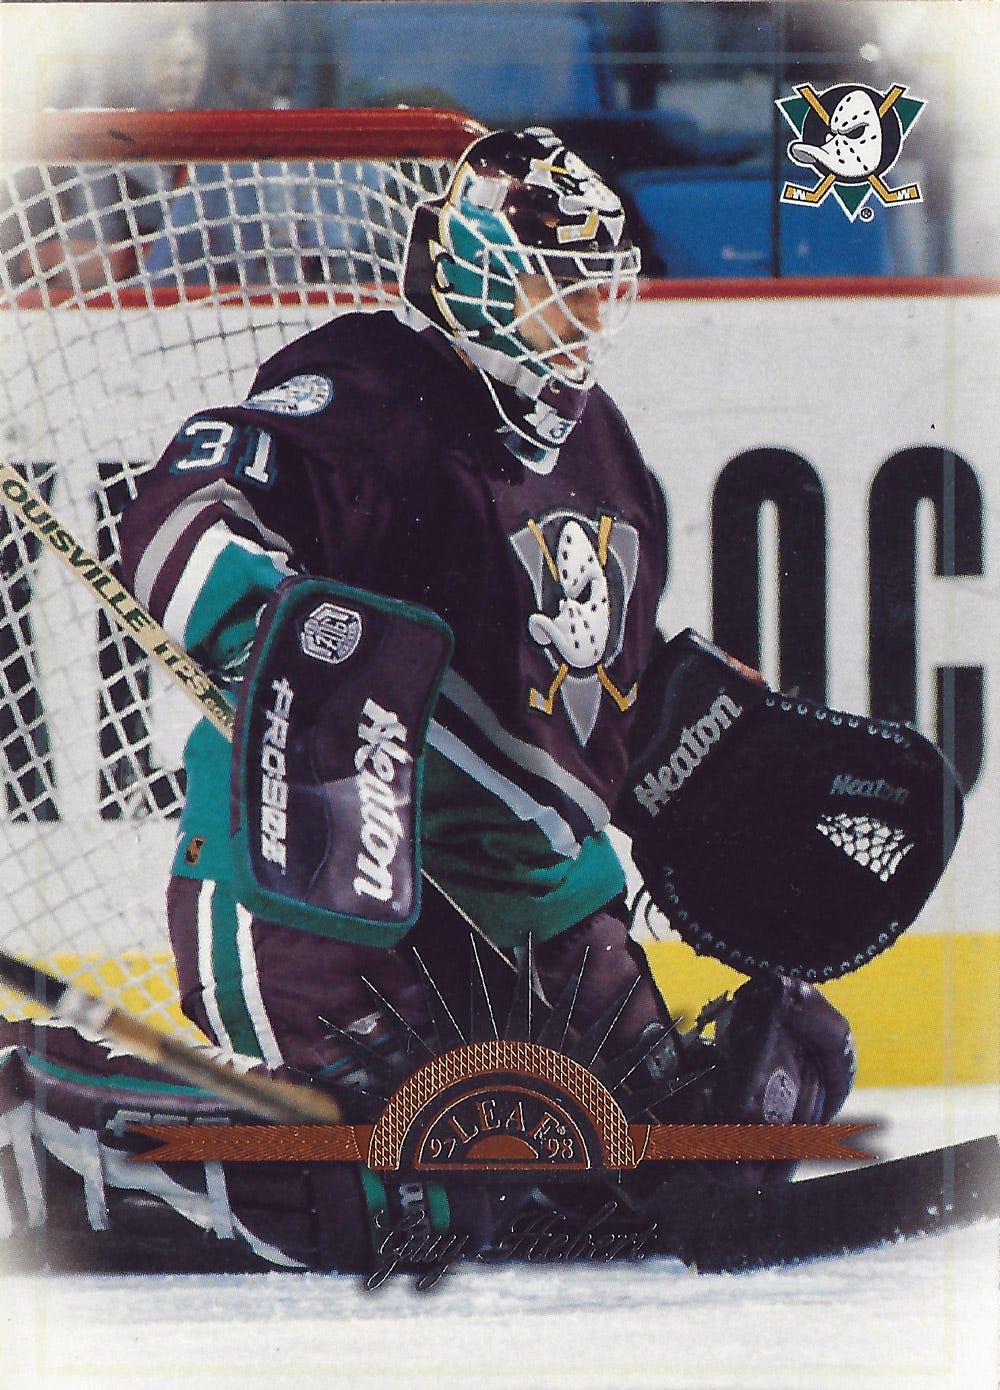 Wearing 90's NHL Goalie Gear 